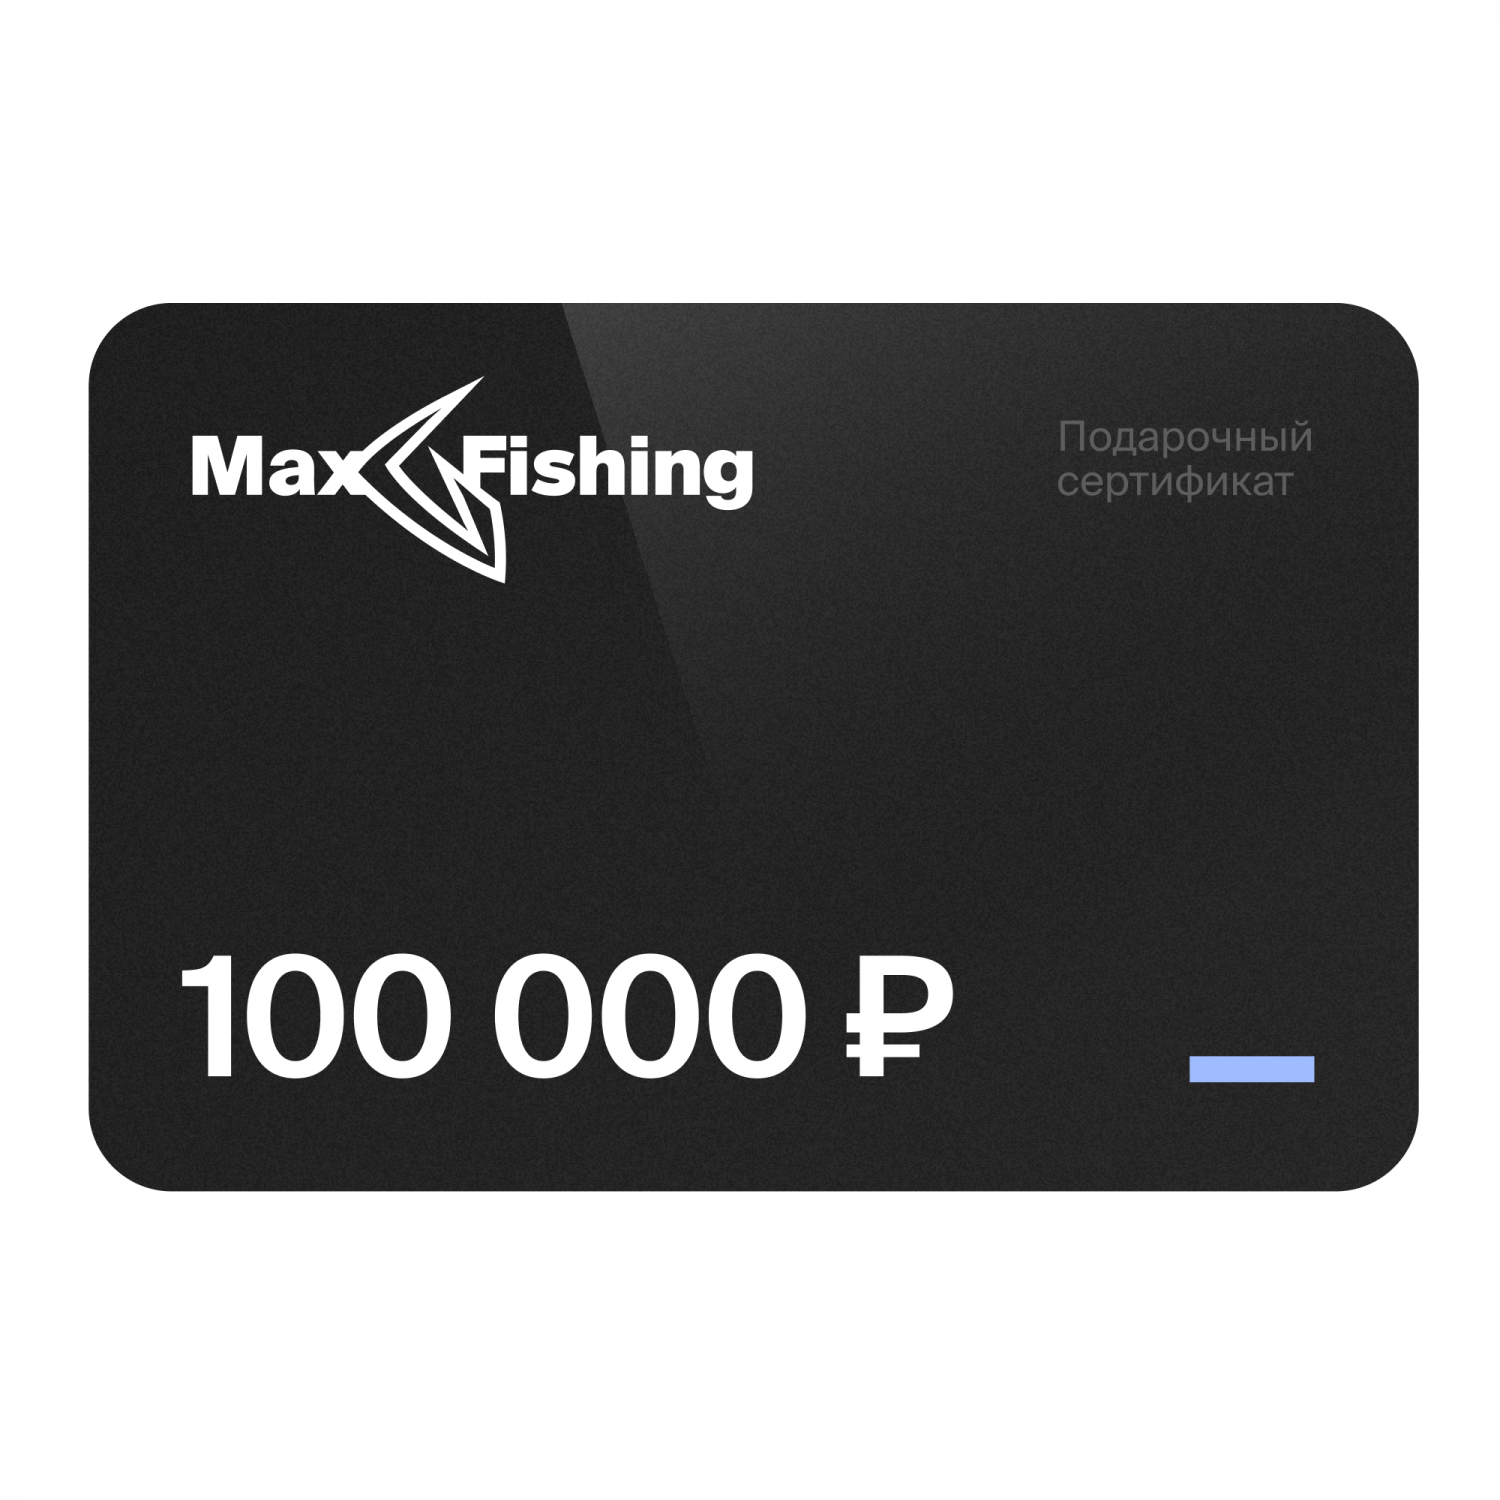 Подарочный сертификат MaxFishing 100 000 ₽ подарочный сертификат на 5 000 рублей